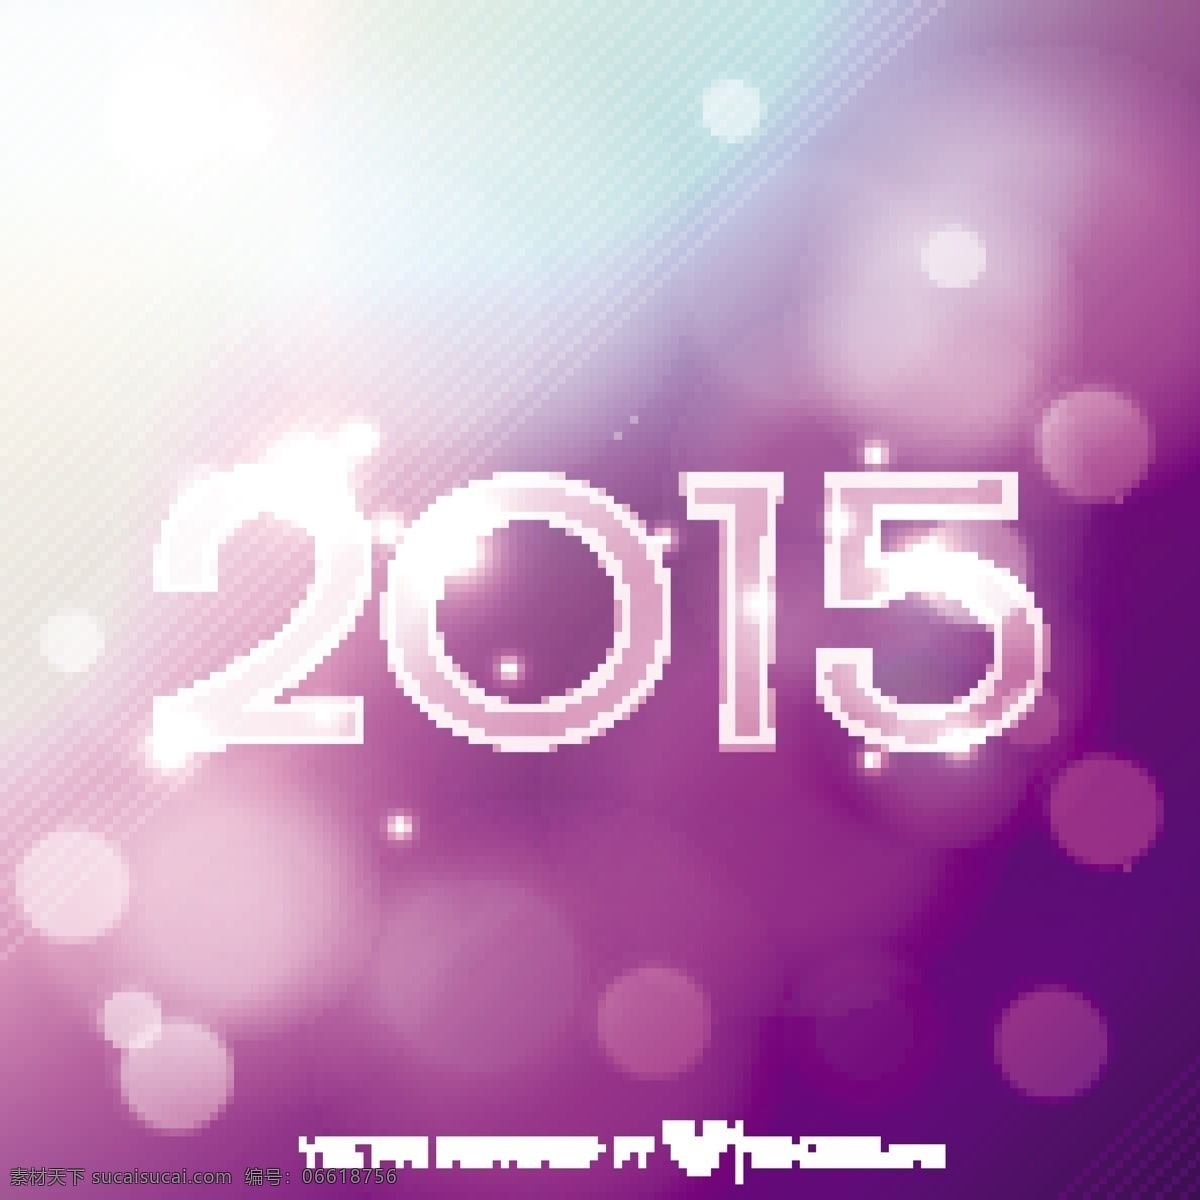 2015 粉红色 紫色 发光 背景 虚化 背景壁纸 庆典活动 聚会 节日和季节 模板和模型